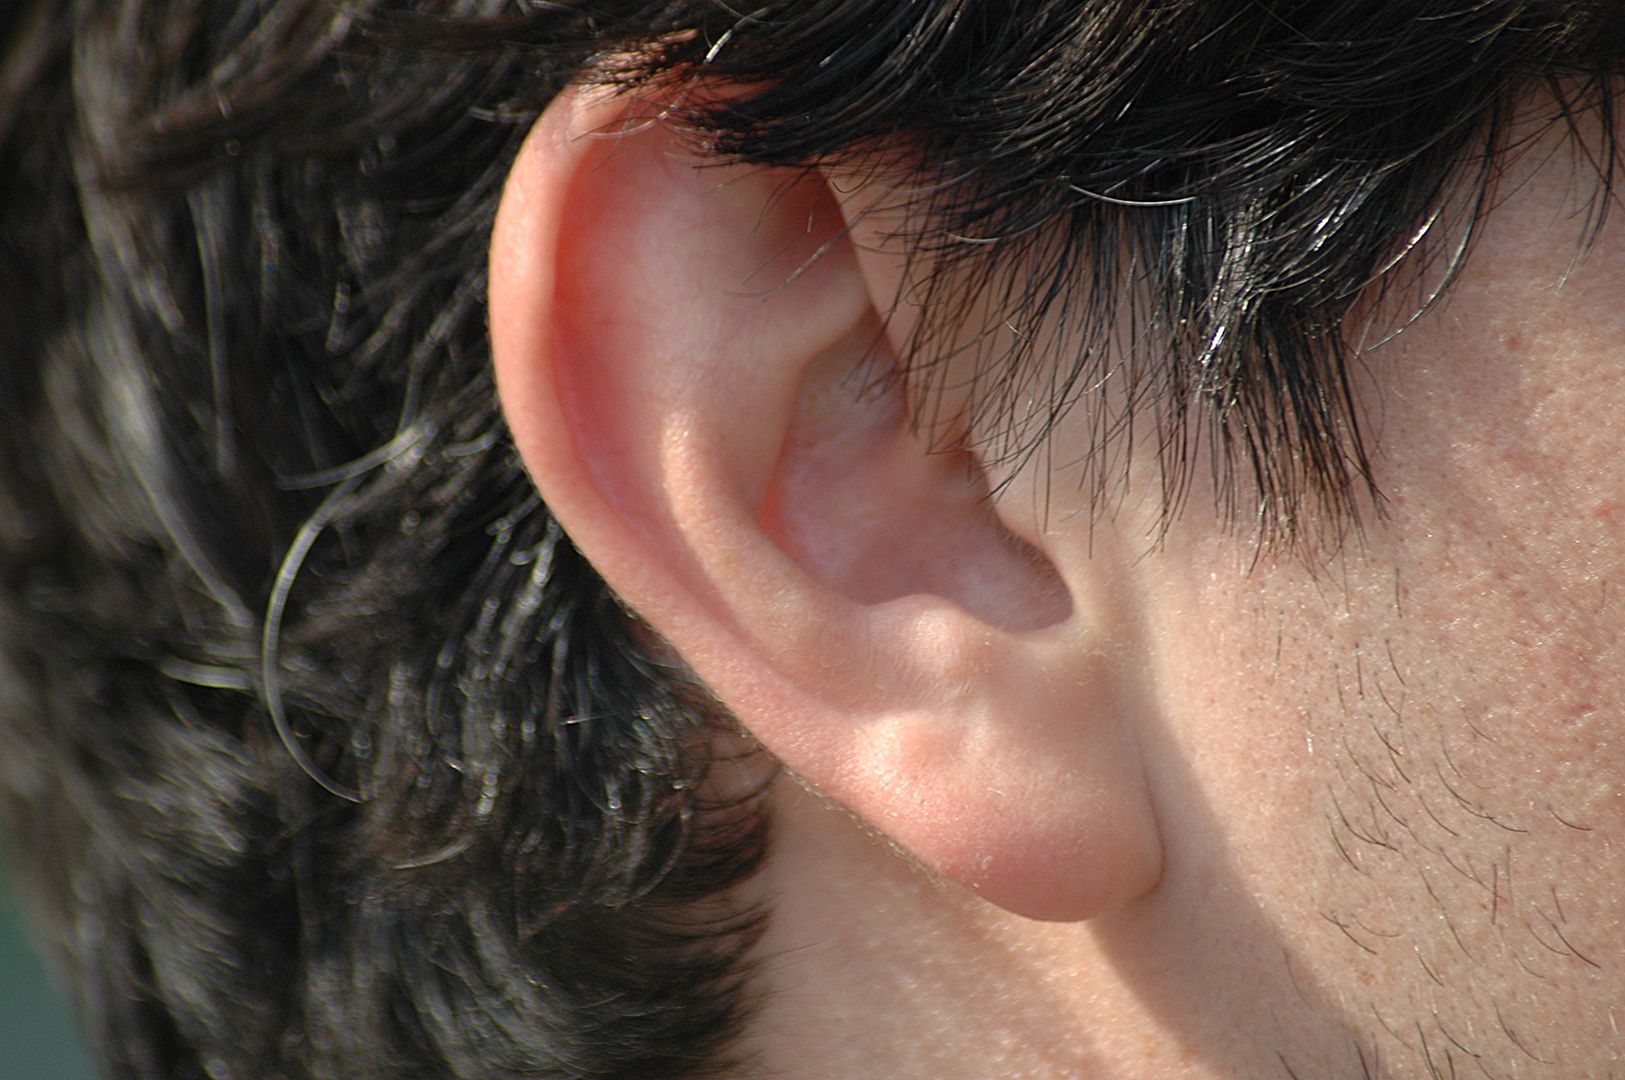 Znak Franka na uchu. Ostrzega o miażdżycy i zbliżającym się zawale